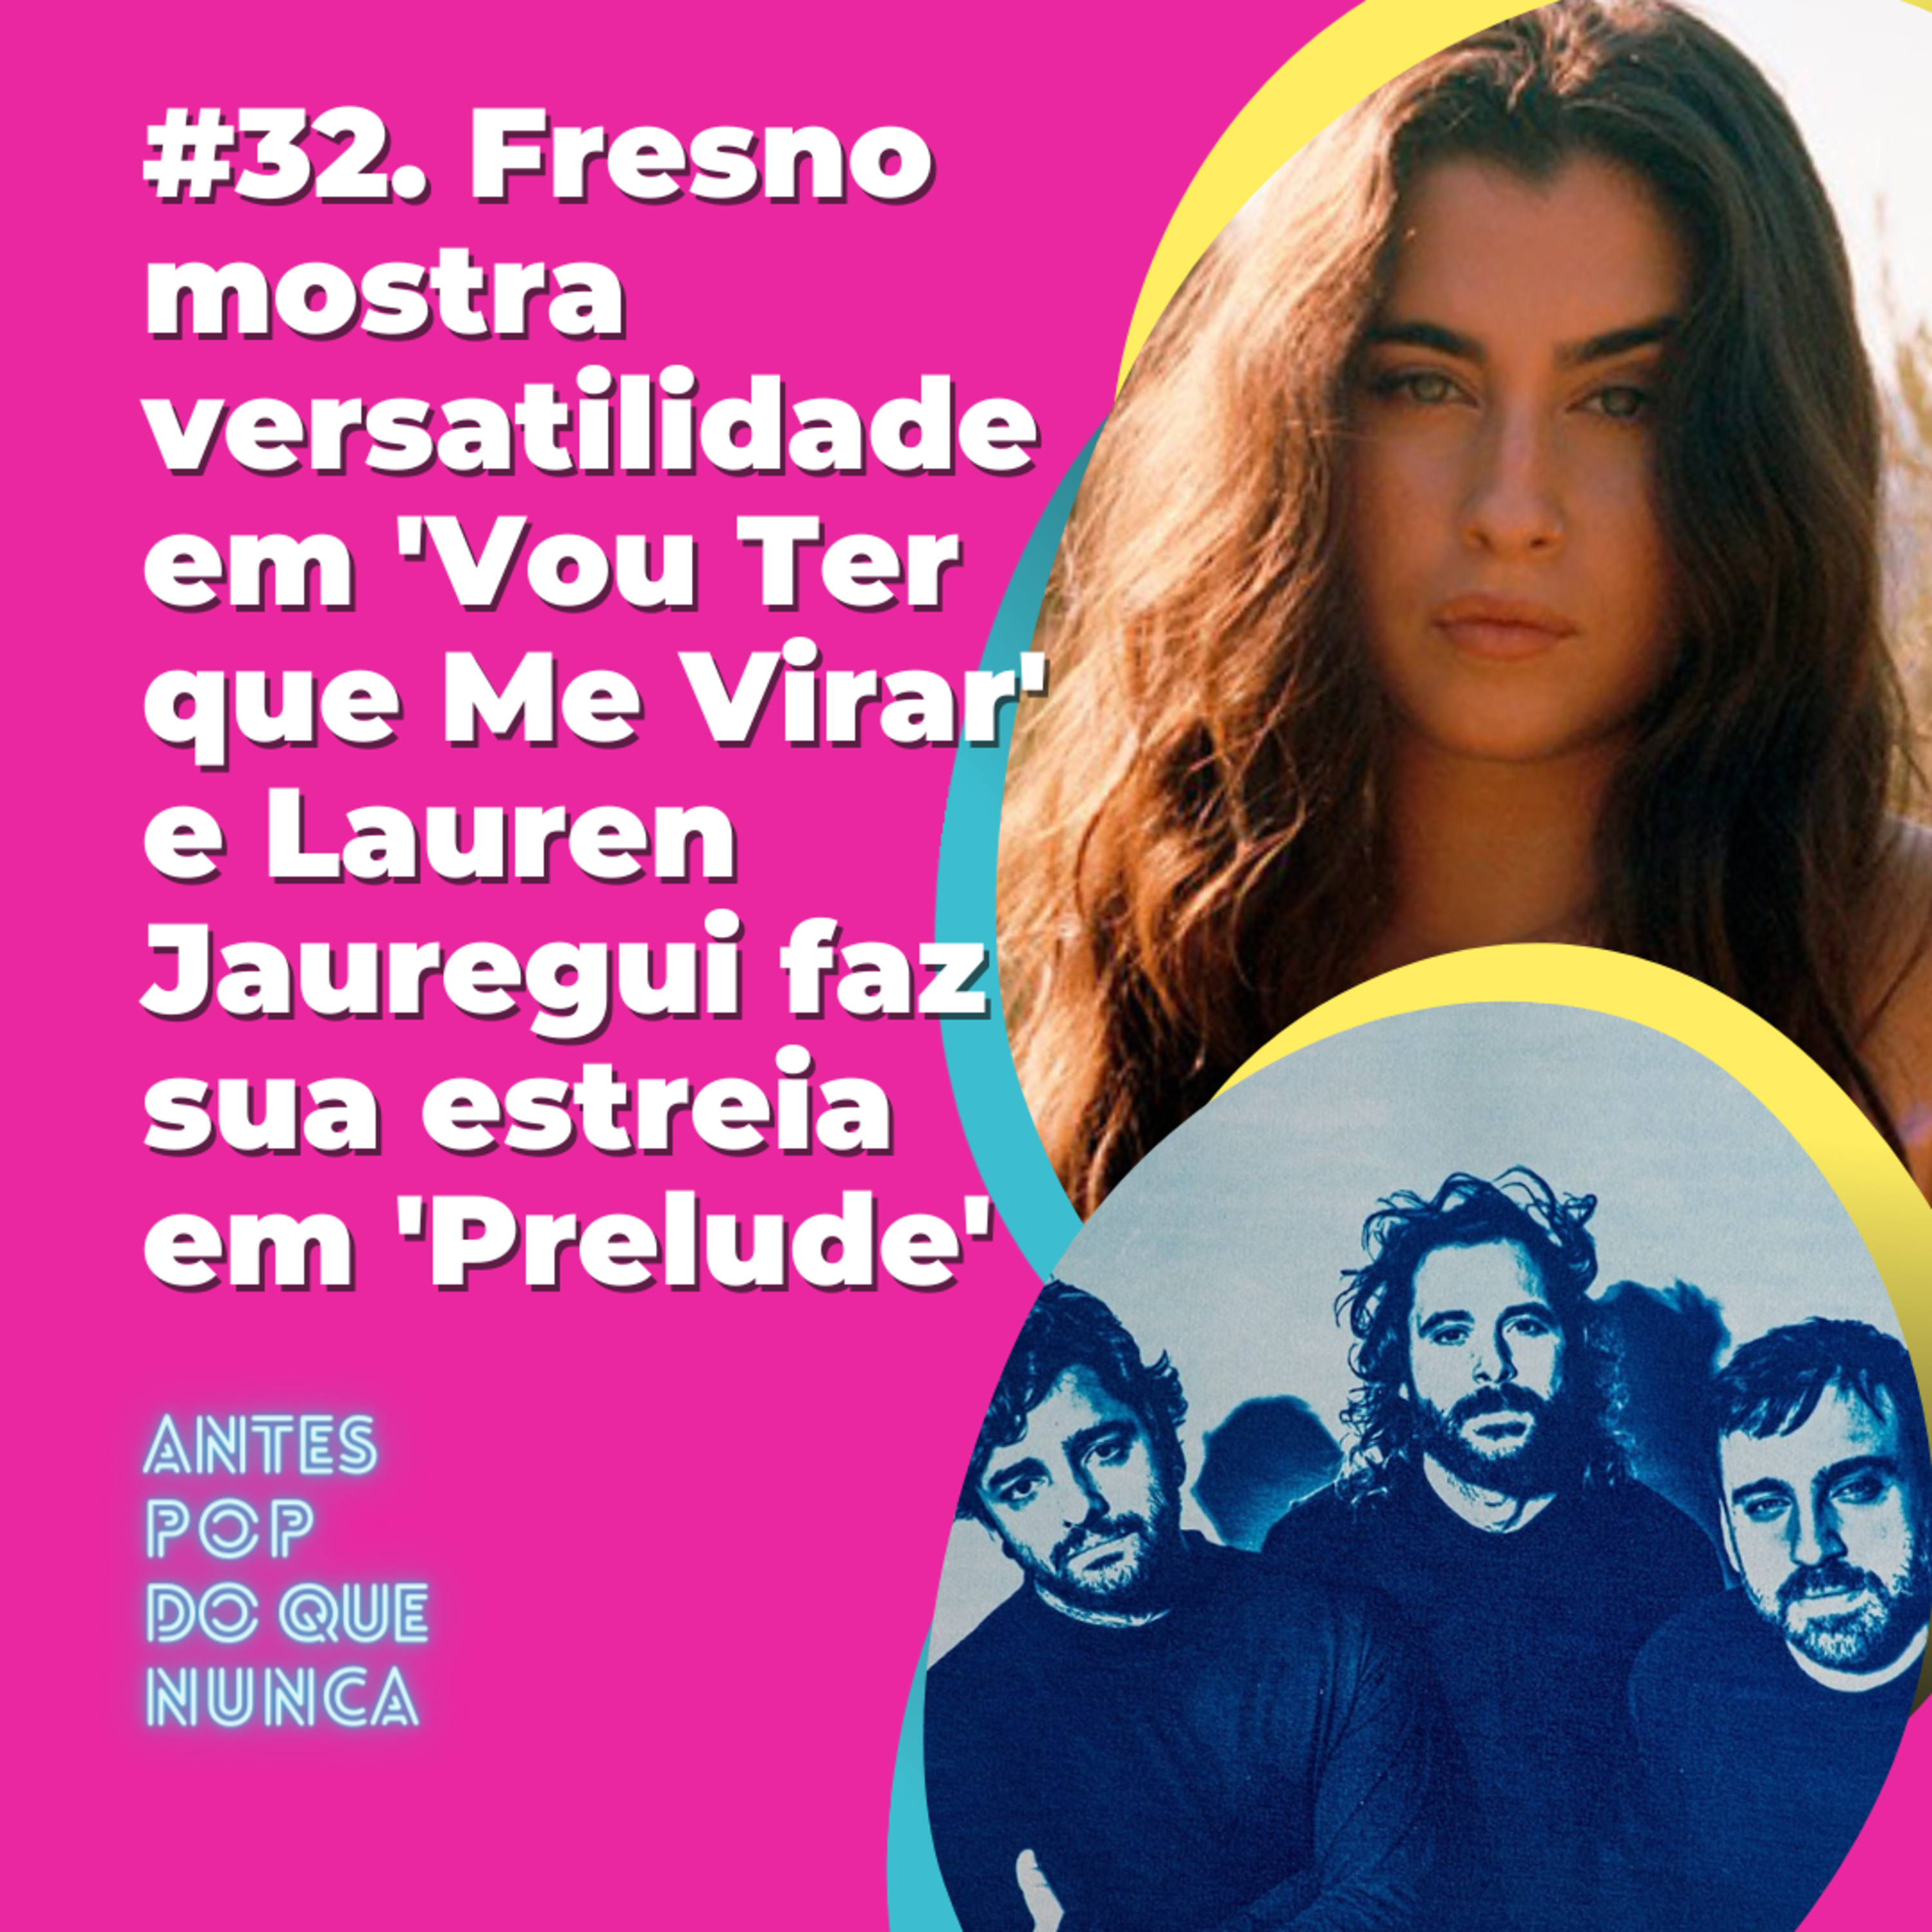 #32. Fresno mostra versatilidade em 'Vou Ter que Me Virar' e Lauren Jauregui faz sua estreia em 'Prelude'